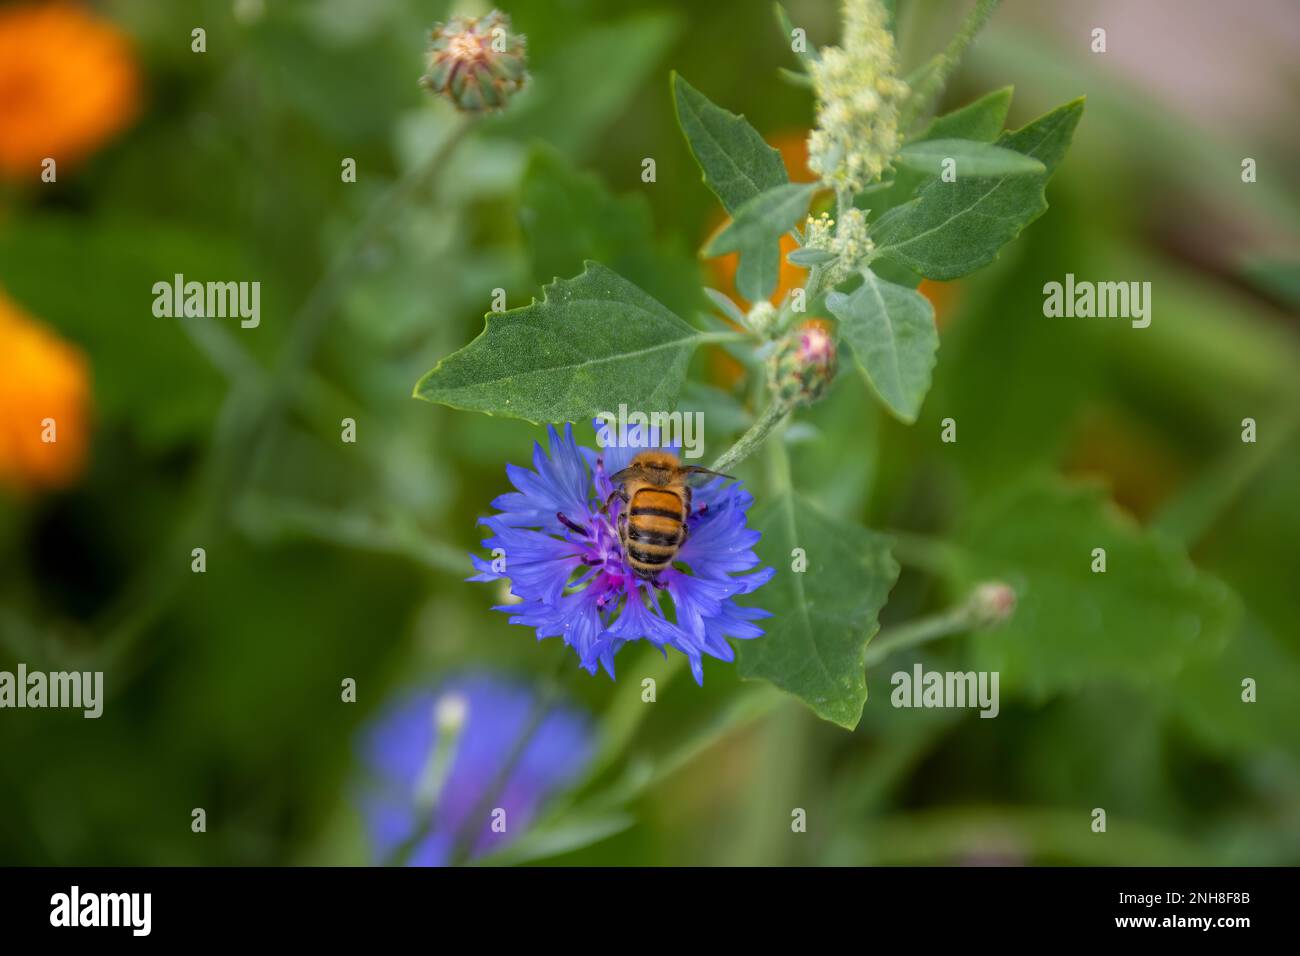 abeille occidentale collectant le pollen de la fleur bleu vif de la fleur de maïs également connue sous le nom de bouton de baccalauréat Banque D'Images